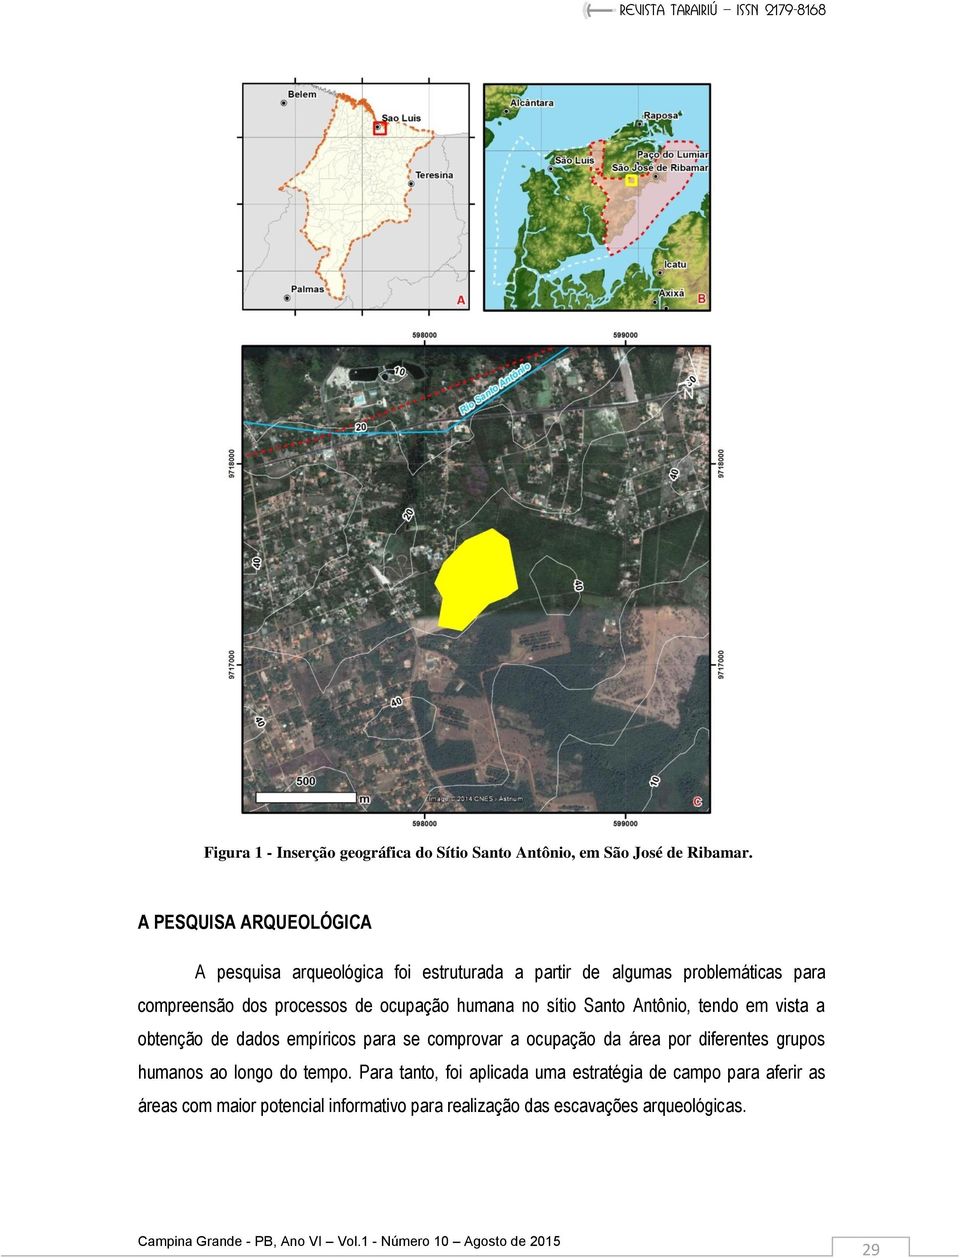 ocupação humana no sítio Santo Antônio, tendo em vista a obtenção de dados empíricos para se comprovar a ocupação da área por